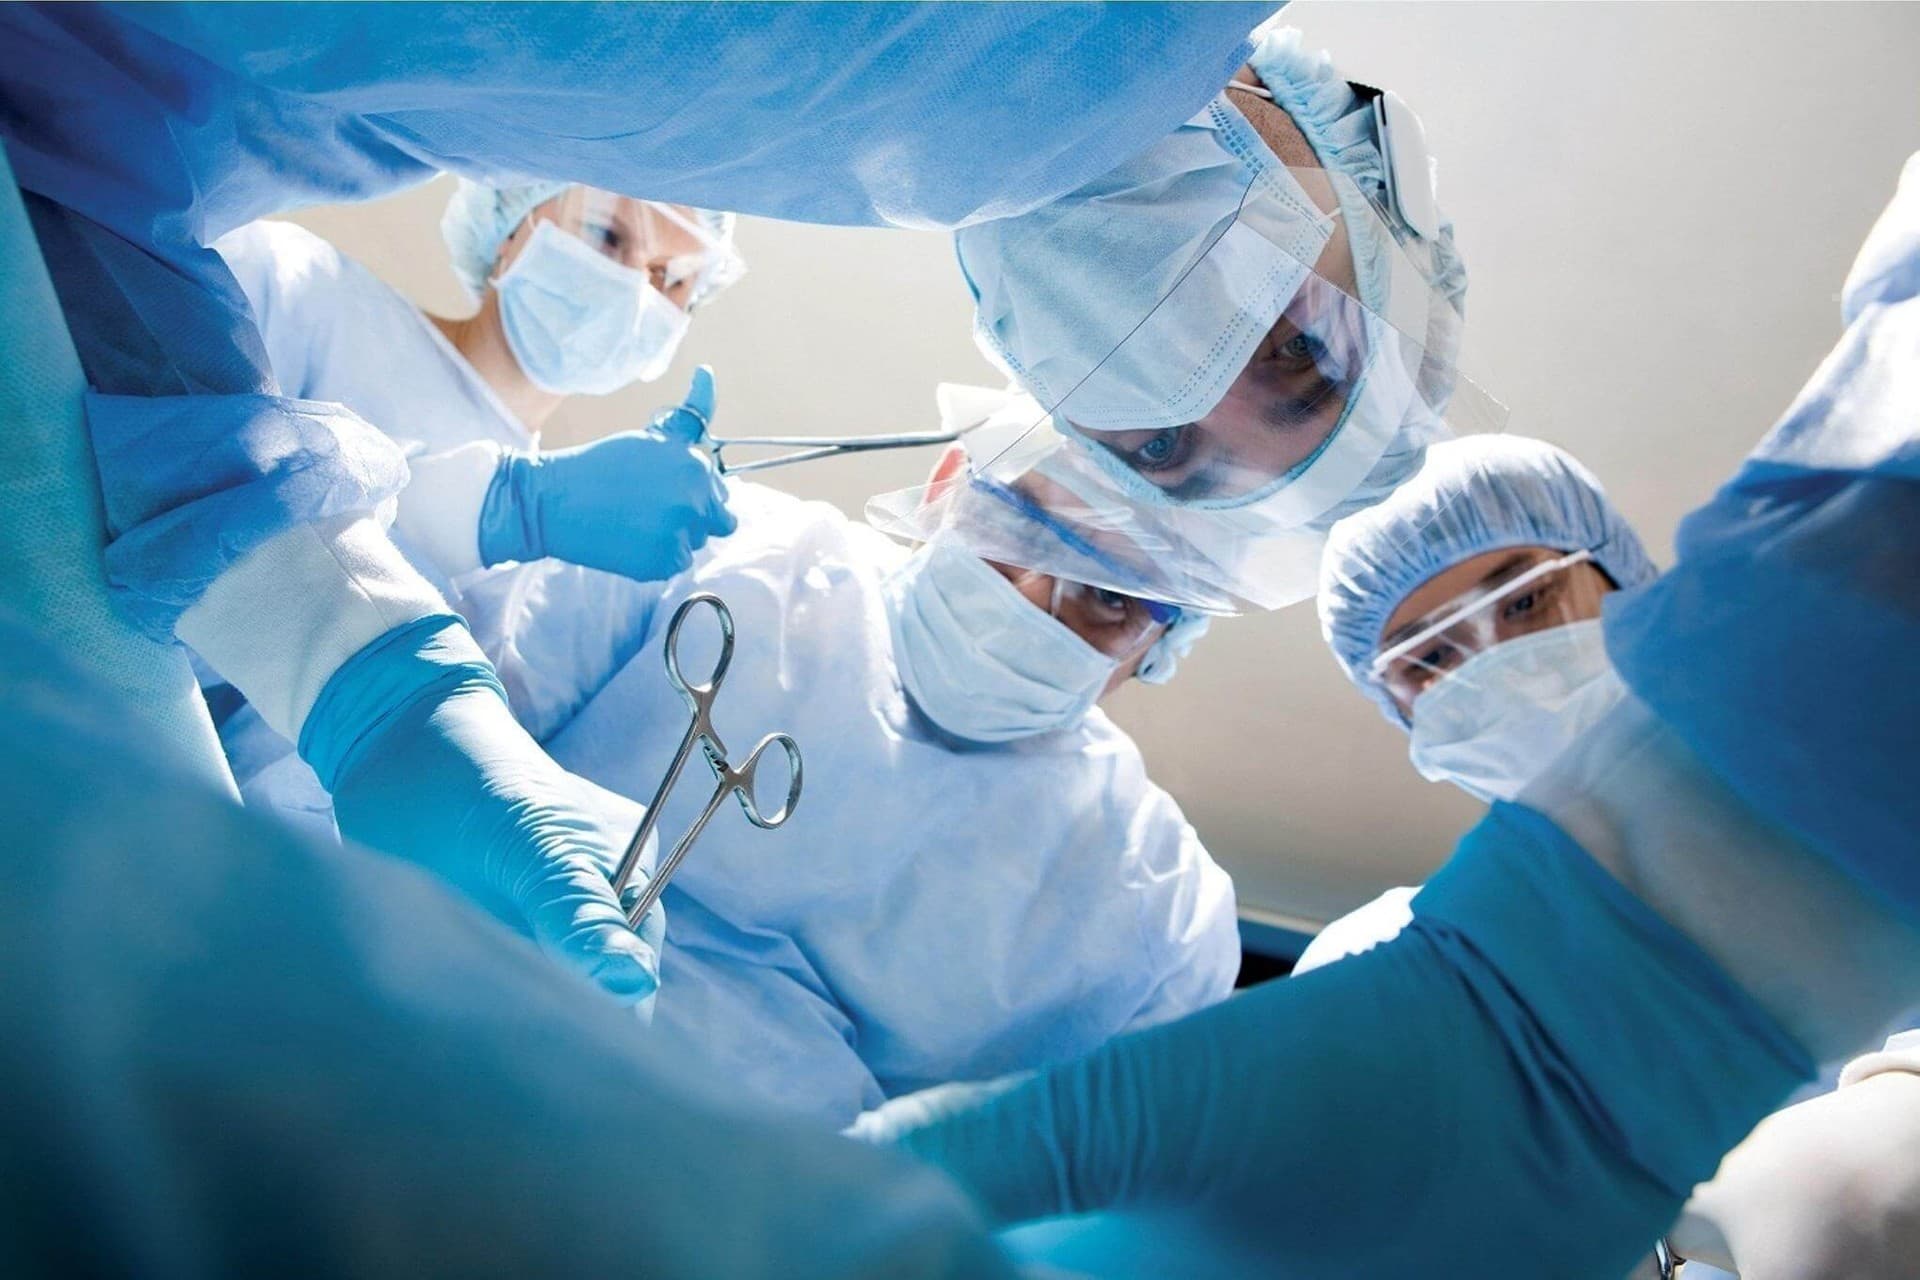 Кубанские хирурги провели редкую операцию по удалению патологии сосудов на стопе